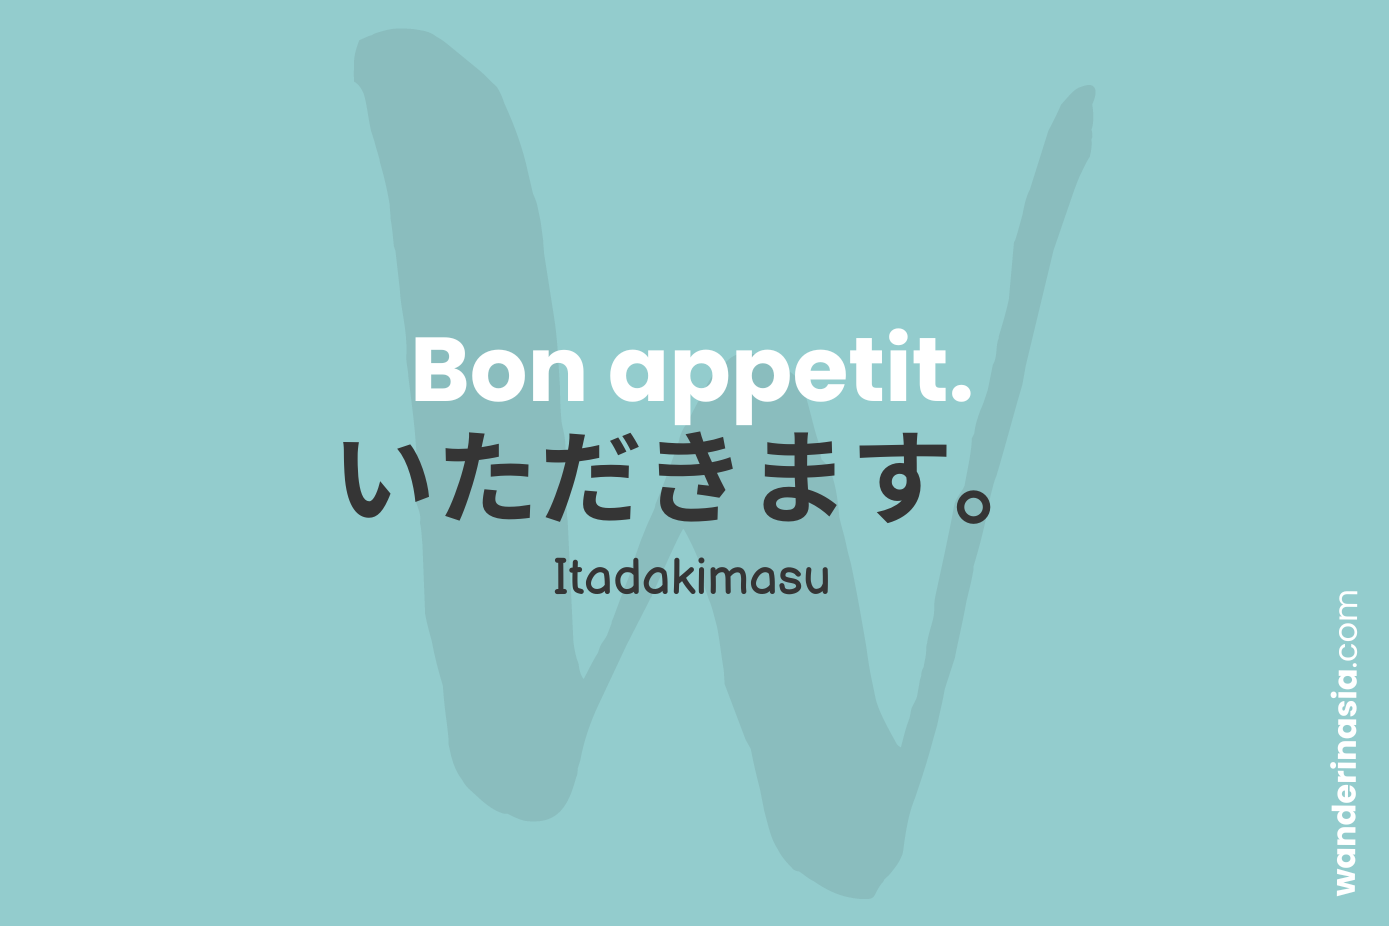 Basic Japanese Phrases for Travelers - Bon appetit